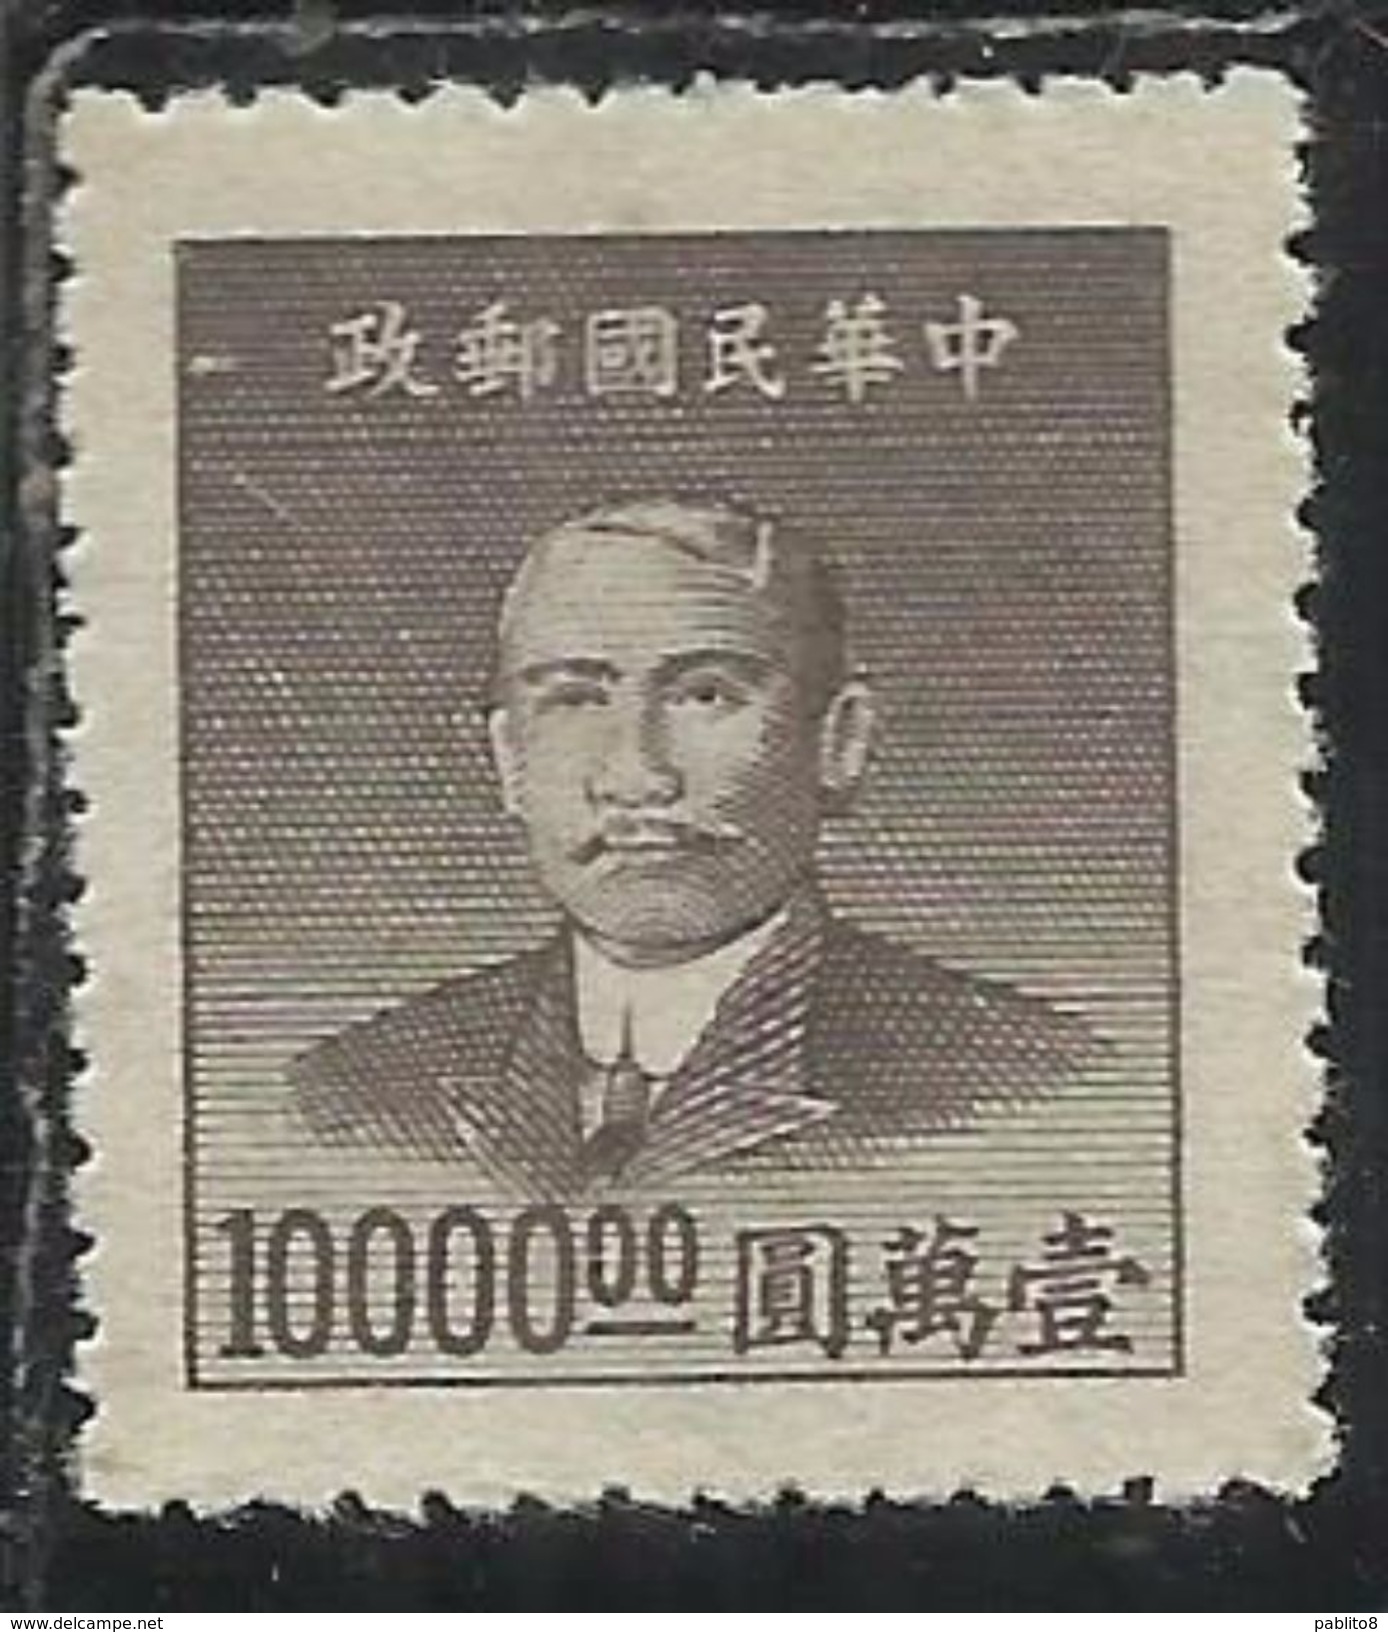 CHINA CINA 1949 Dr Sun Yat-sen 10000$ NG - 1912-1949 Repubblica